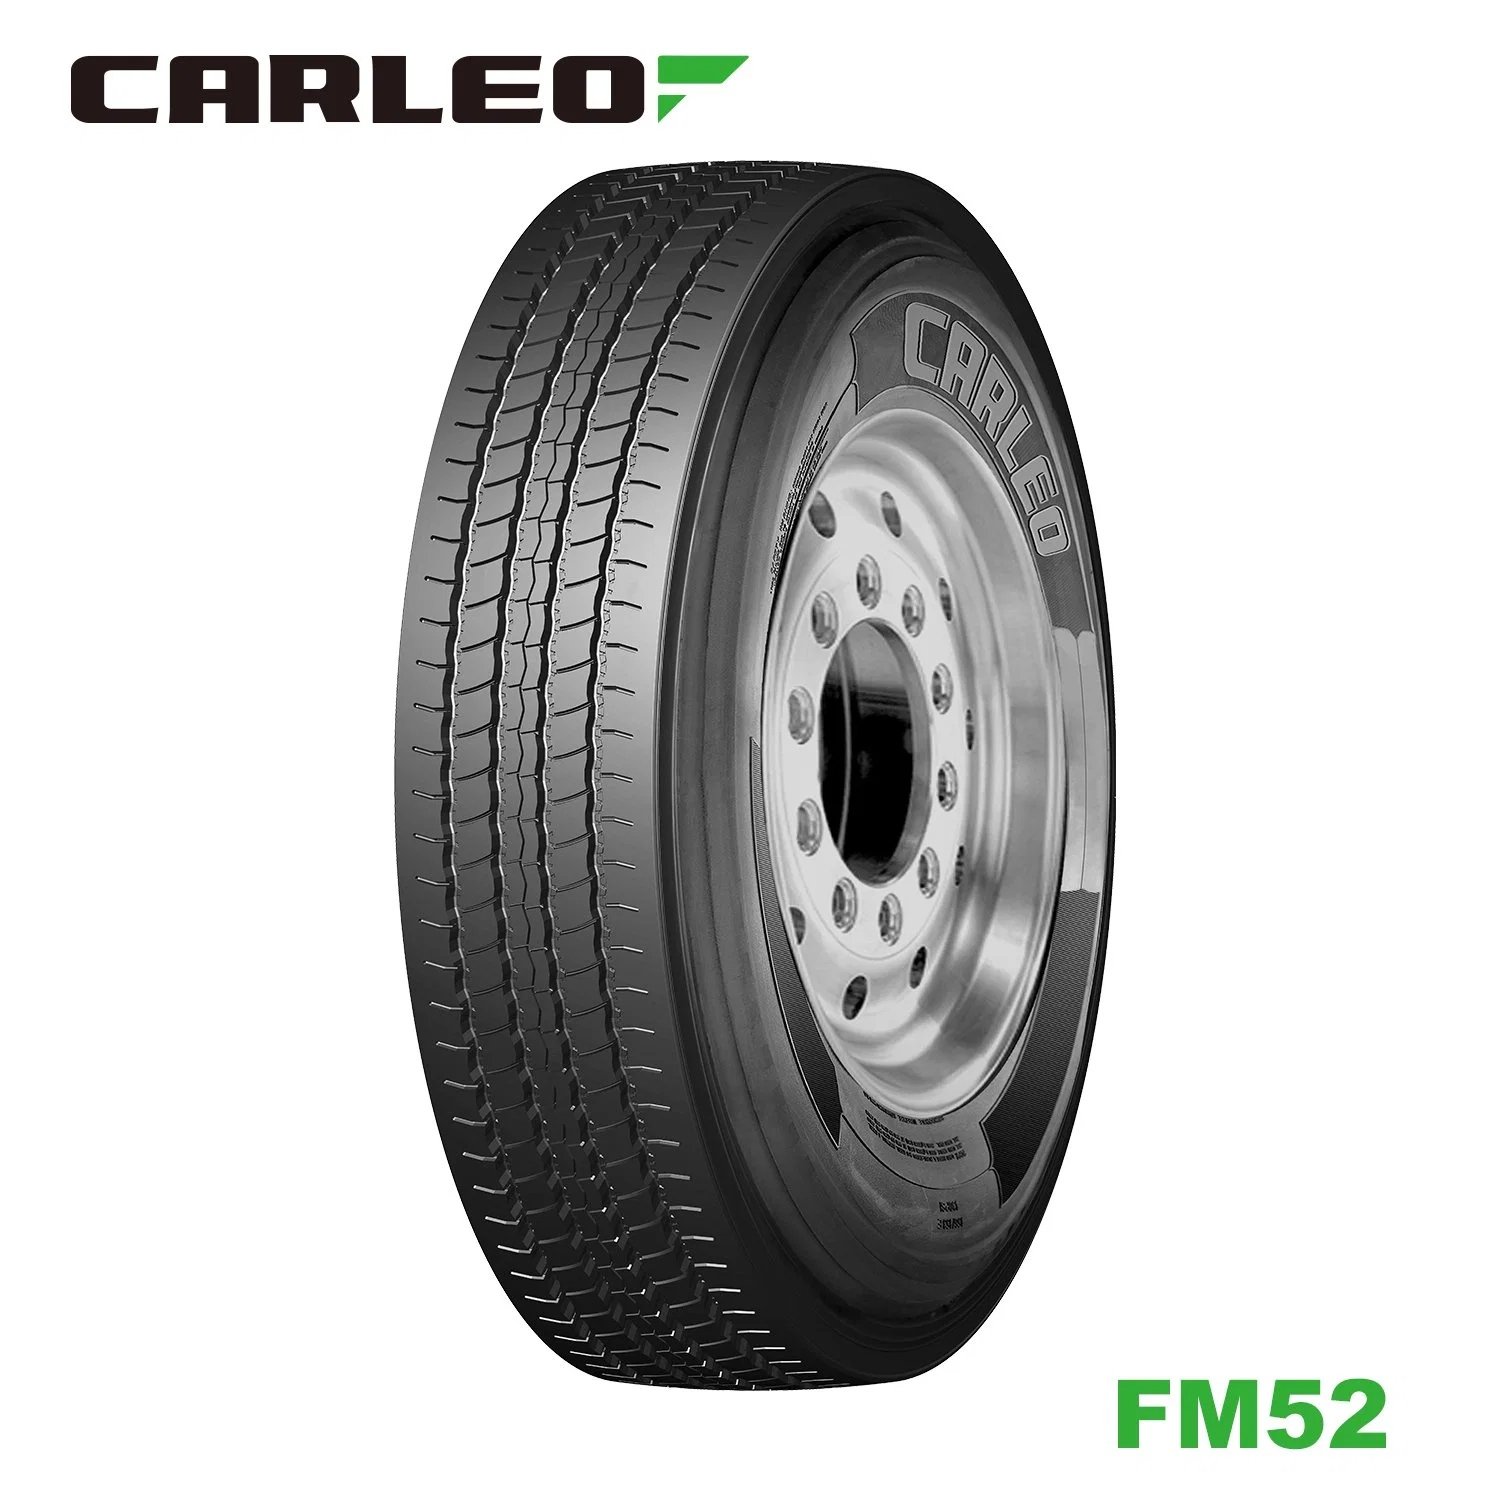 Carleo TBR Reifen 235/75r17.5 FM52 Dh56